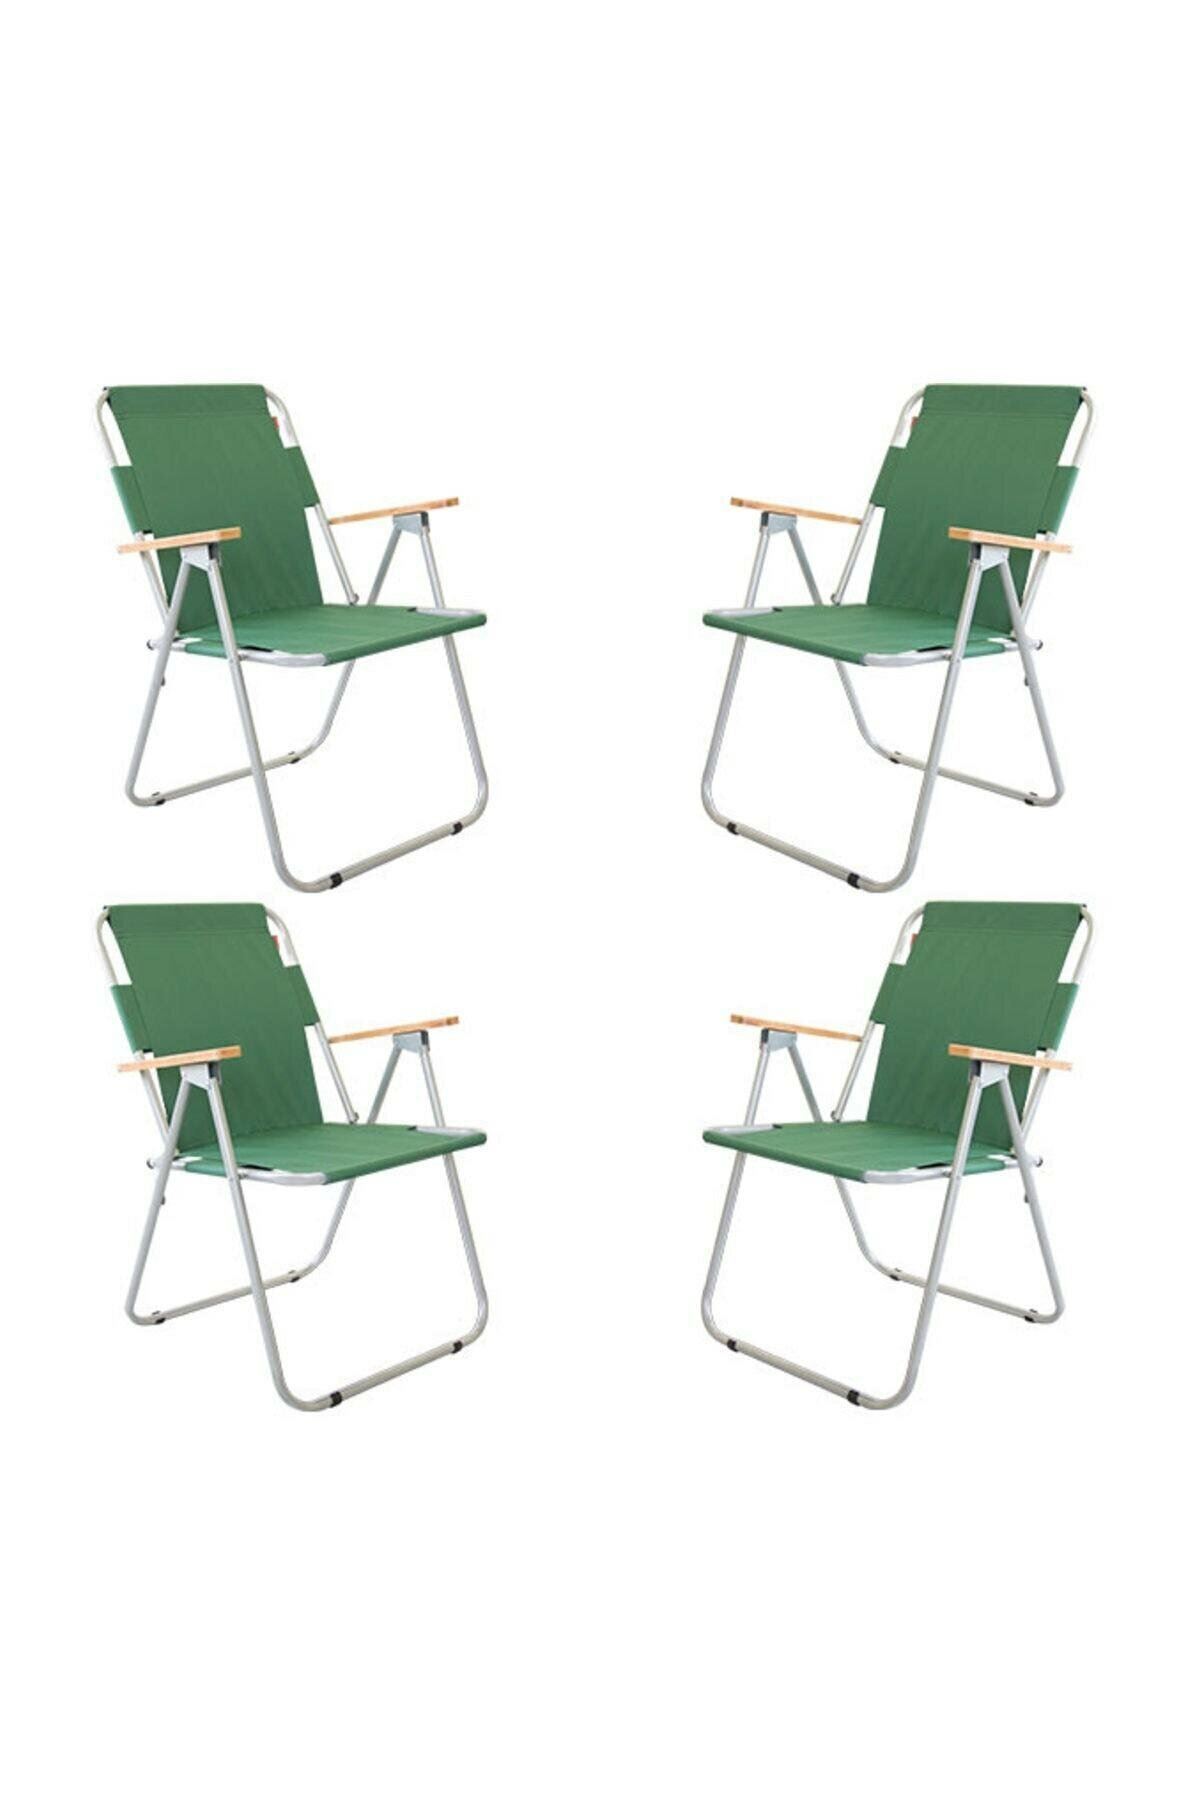 Bofigo 60x80 Pine Folding Table + 4 Pieces Folding Chair Camping Set Garden Balcony Set Green